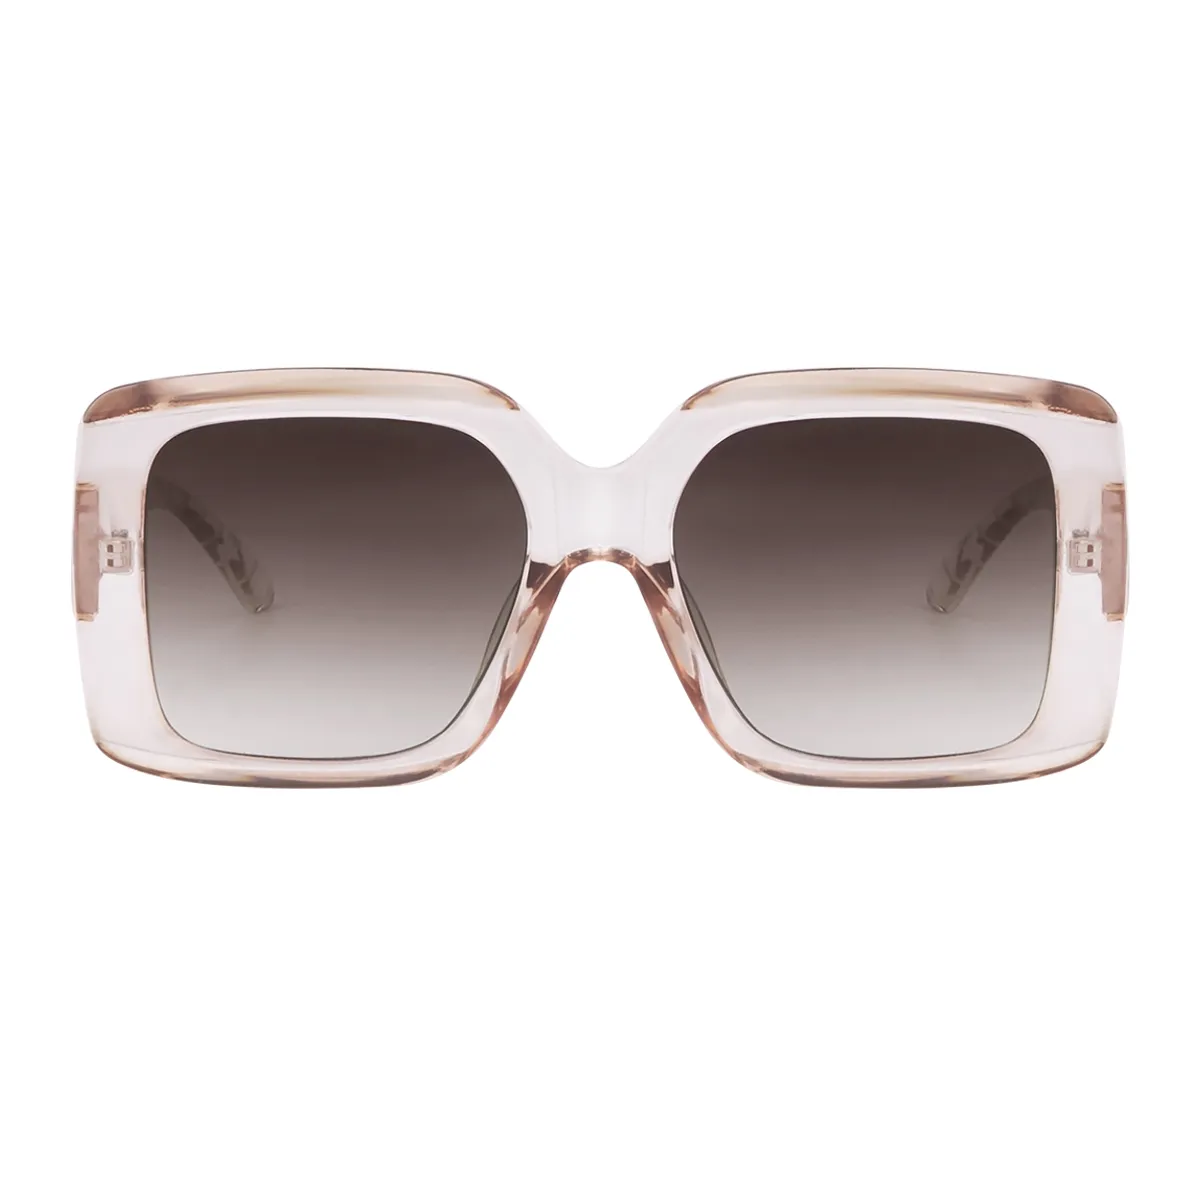 Beatrice - Square Transparent-Tea Sunglasses for Women